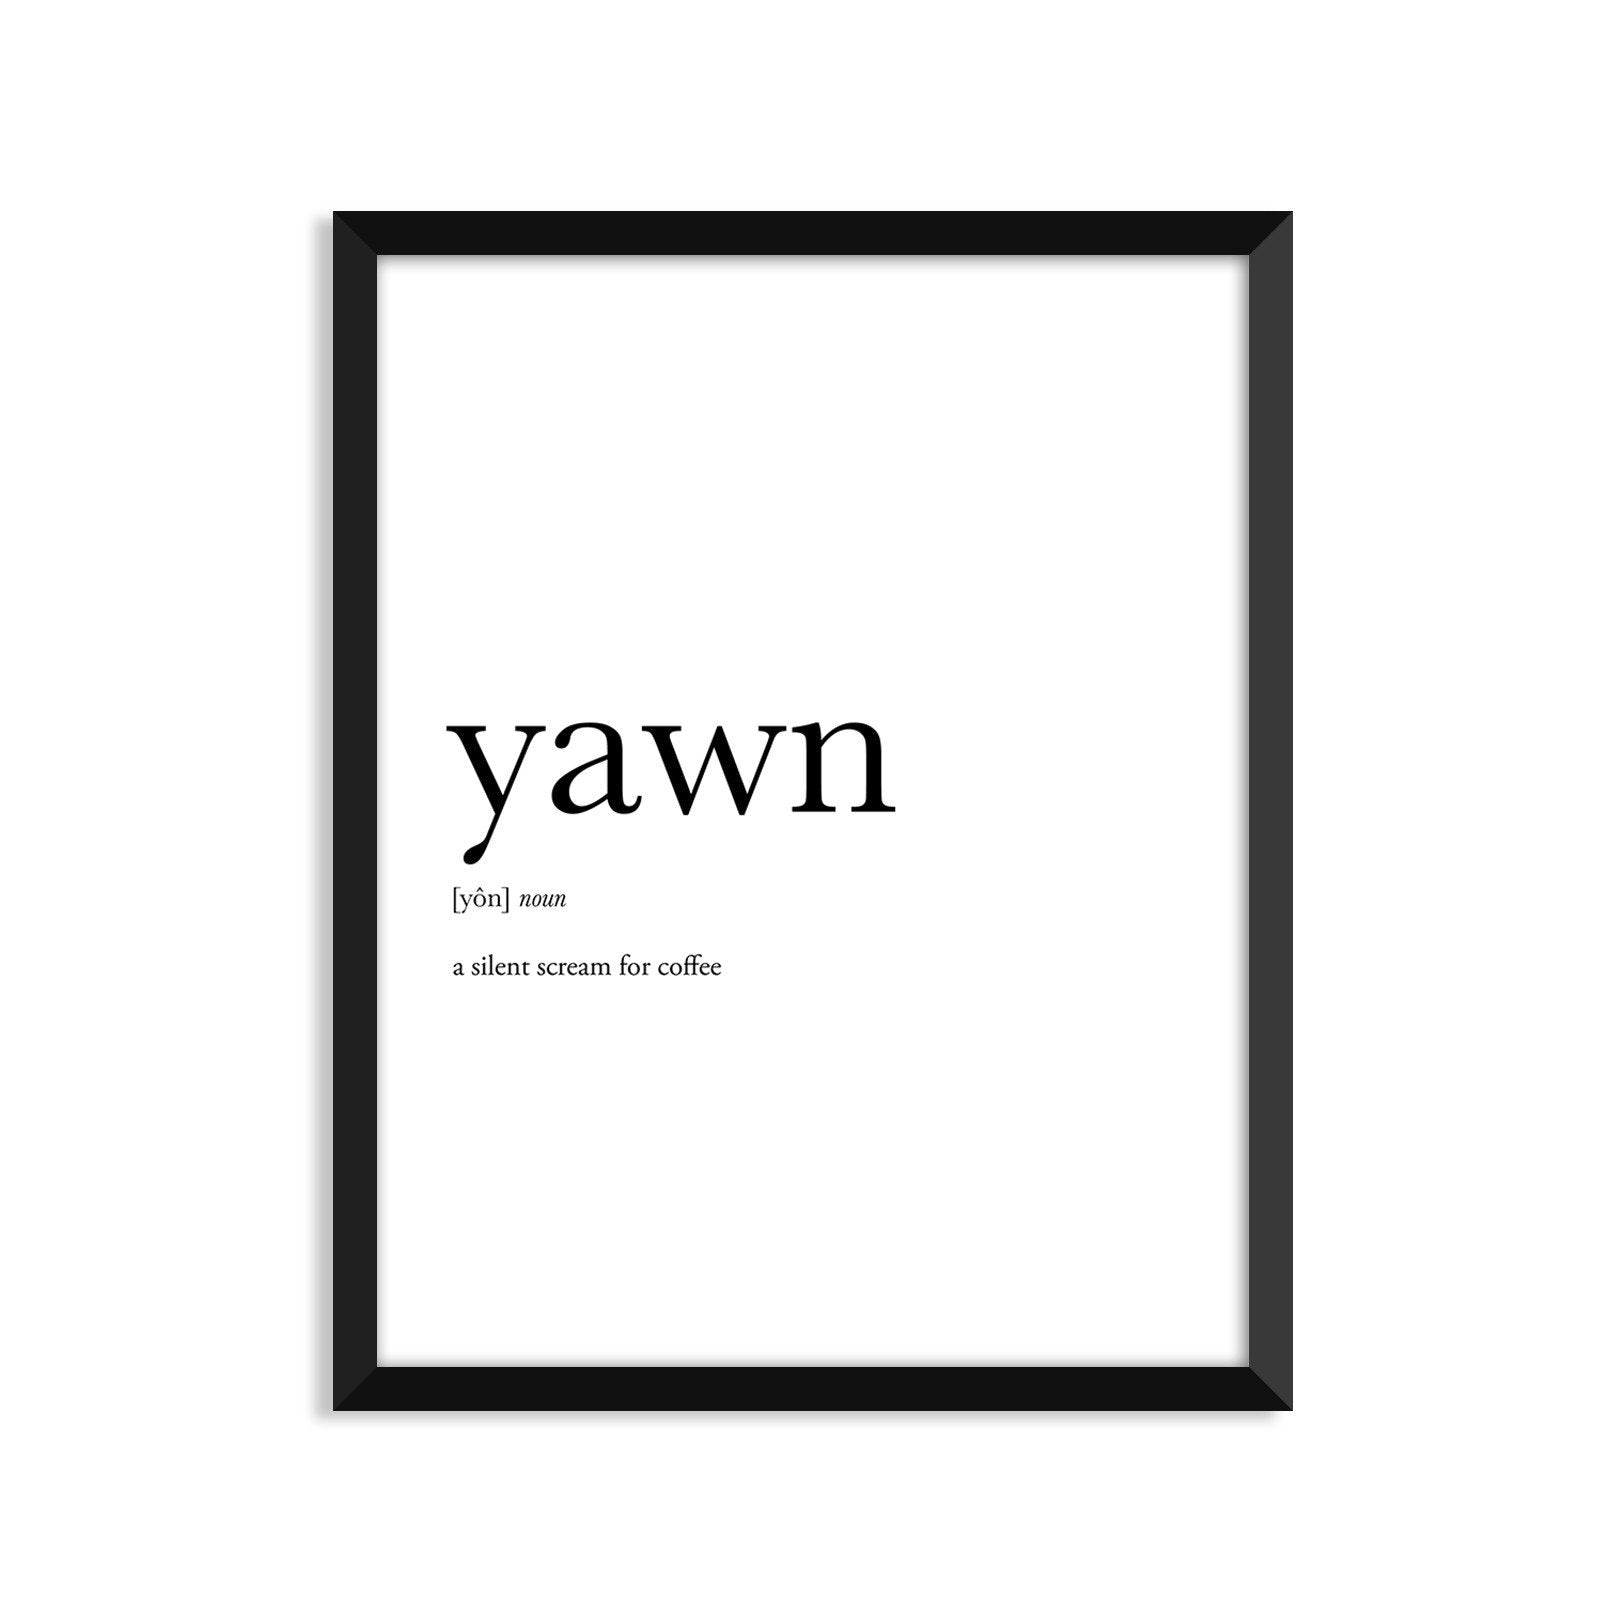 yawn noun greeting card